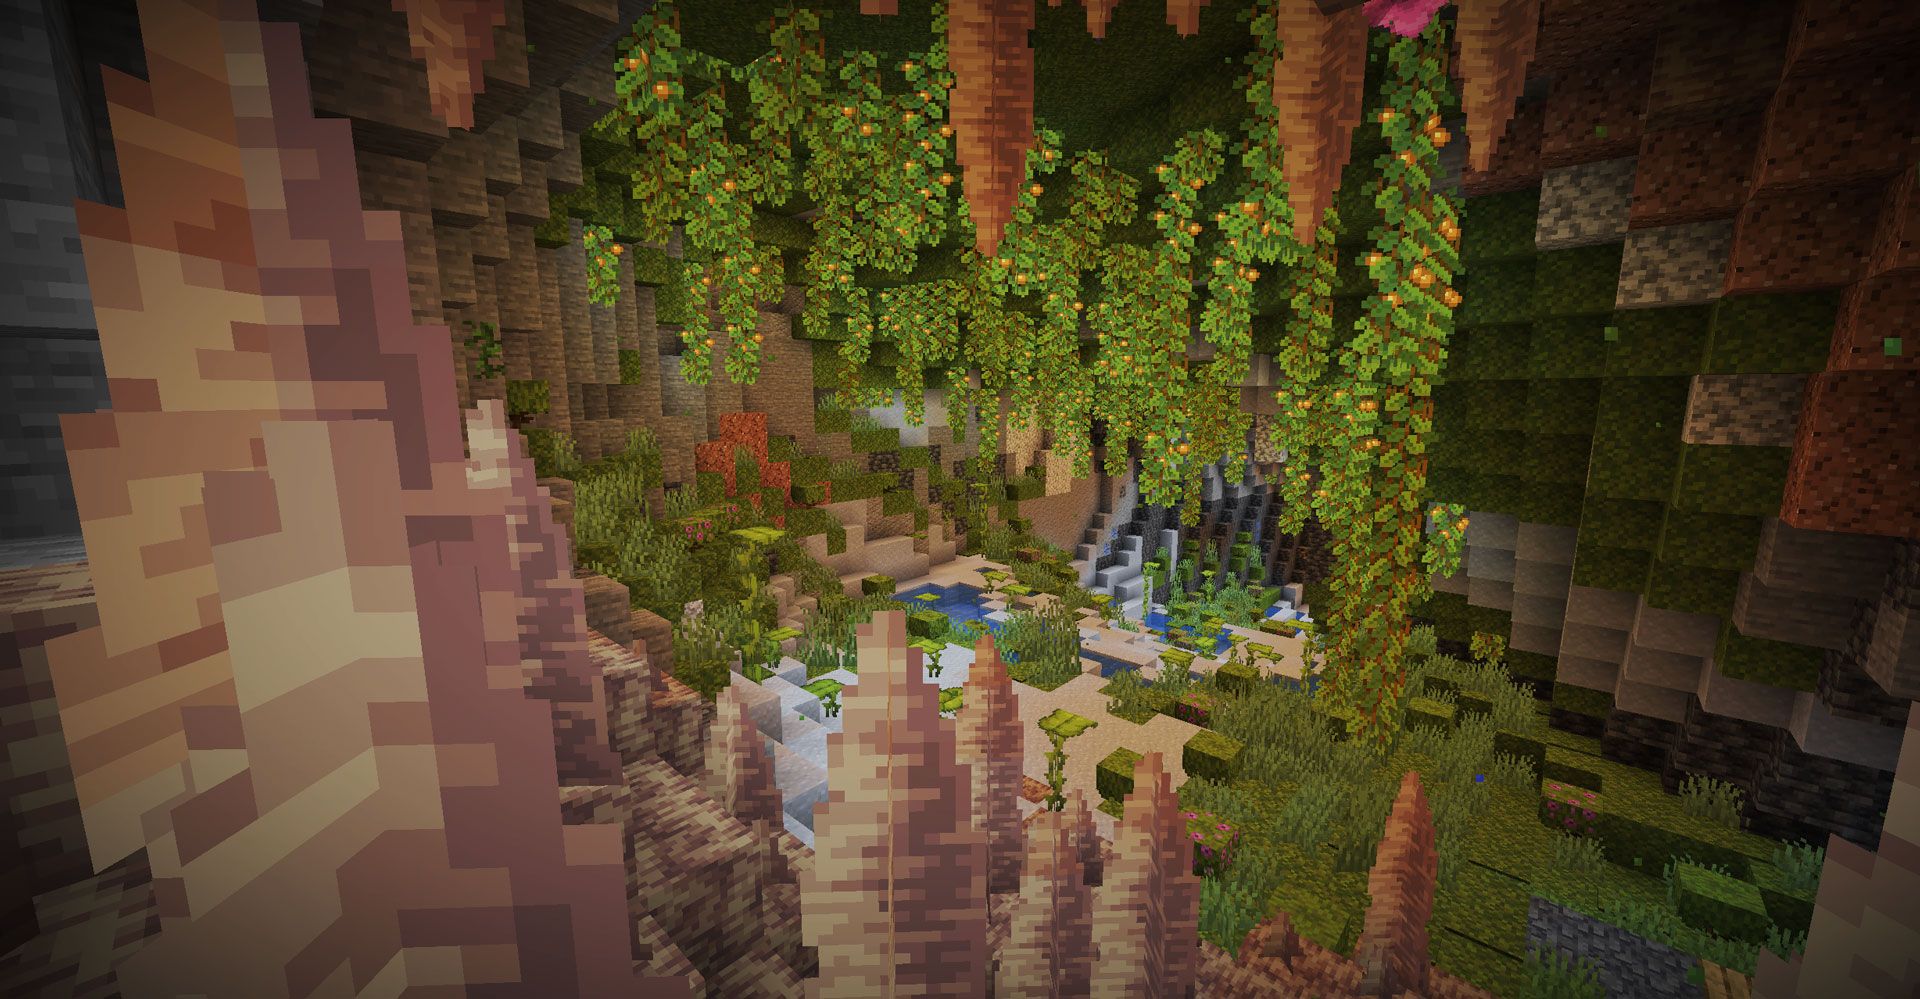 INSANE New Minecraft Builds 1.17 Caves & Cliffs Update! 